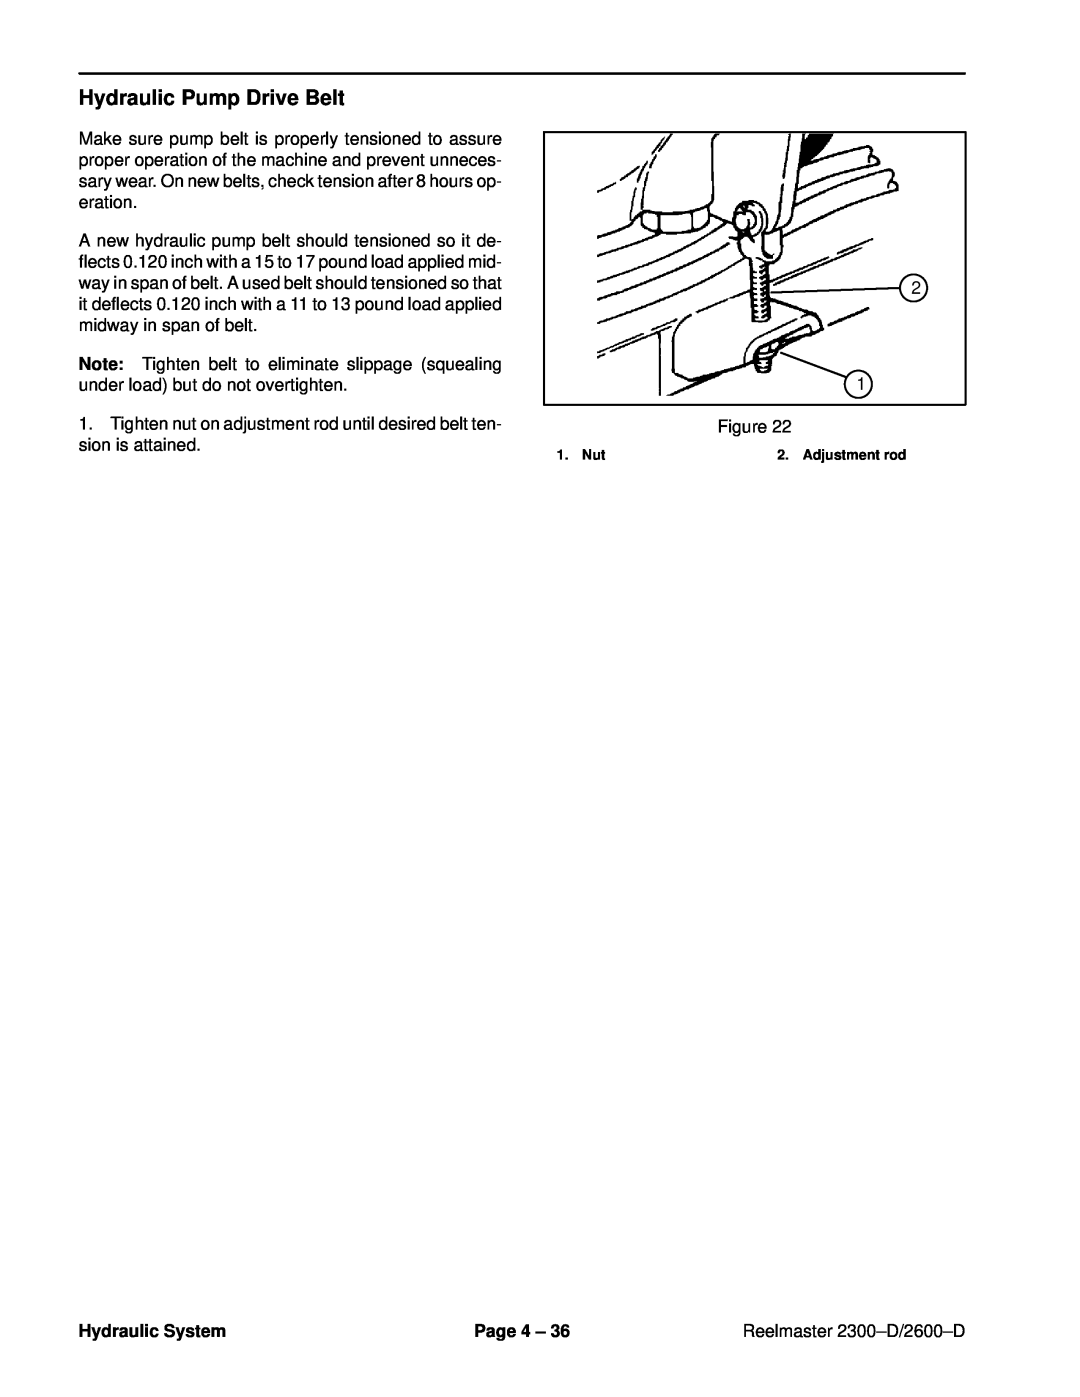 Toro 2300-D, 2600D service manual Hydraulic Pump Drive Belt, Hydraulic System, Page 4 ±, Reelmaster 2300±D/2600±D, Nut 